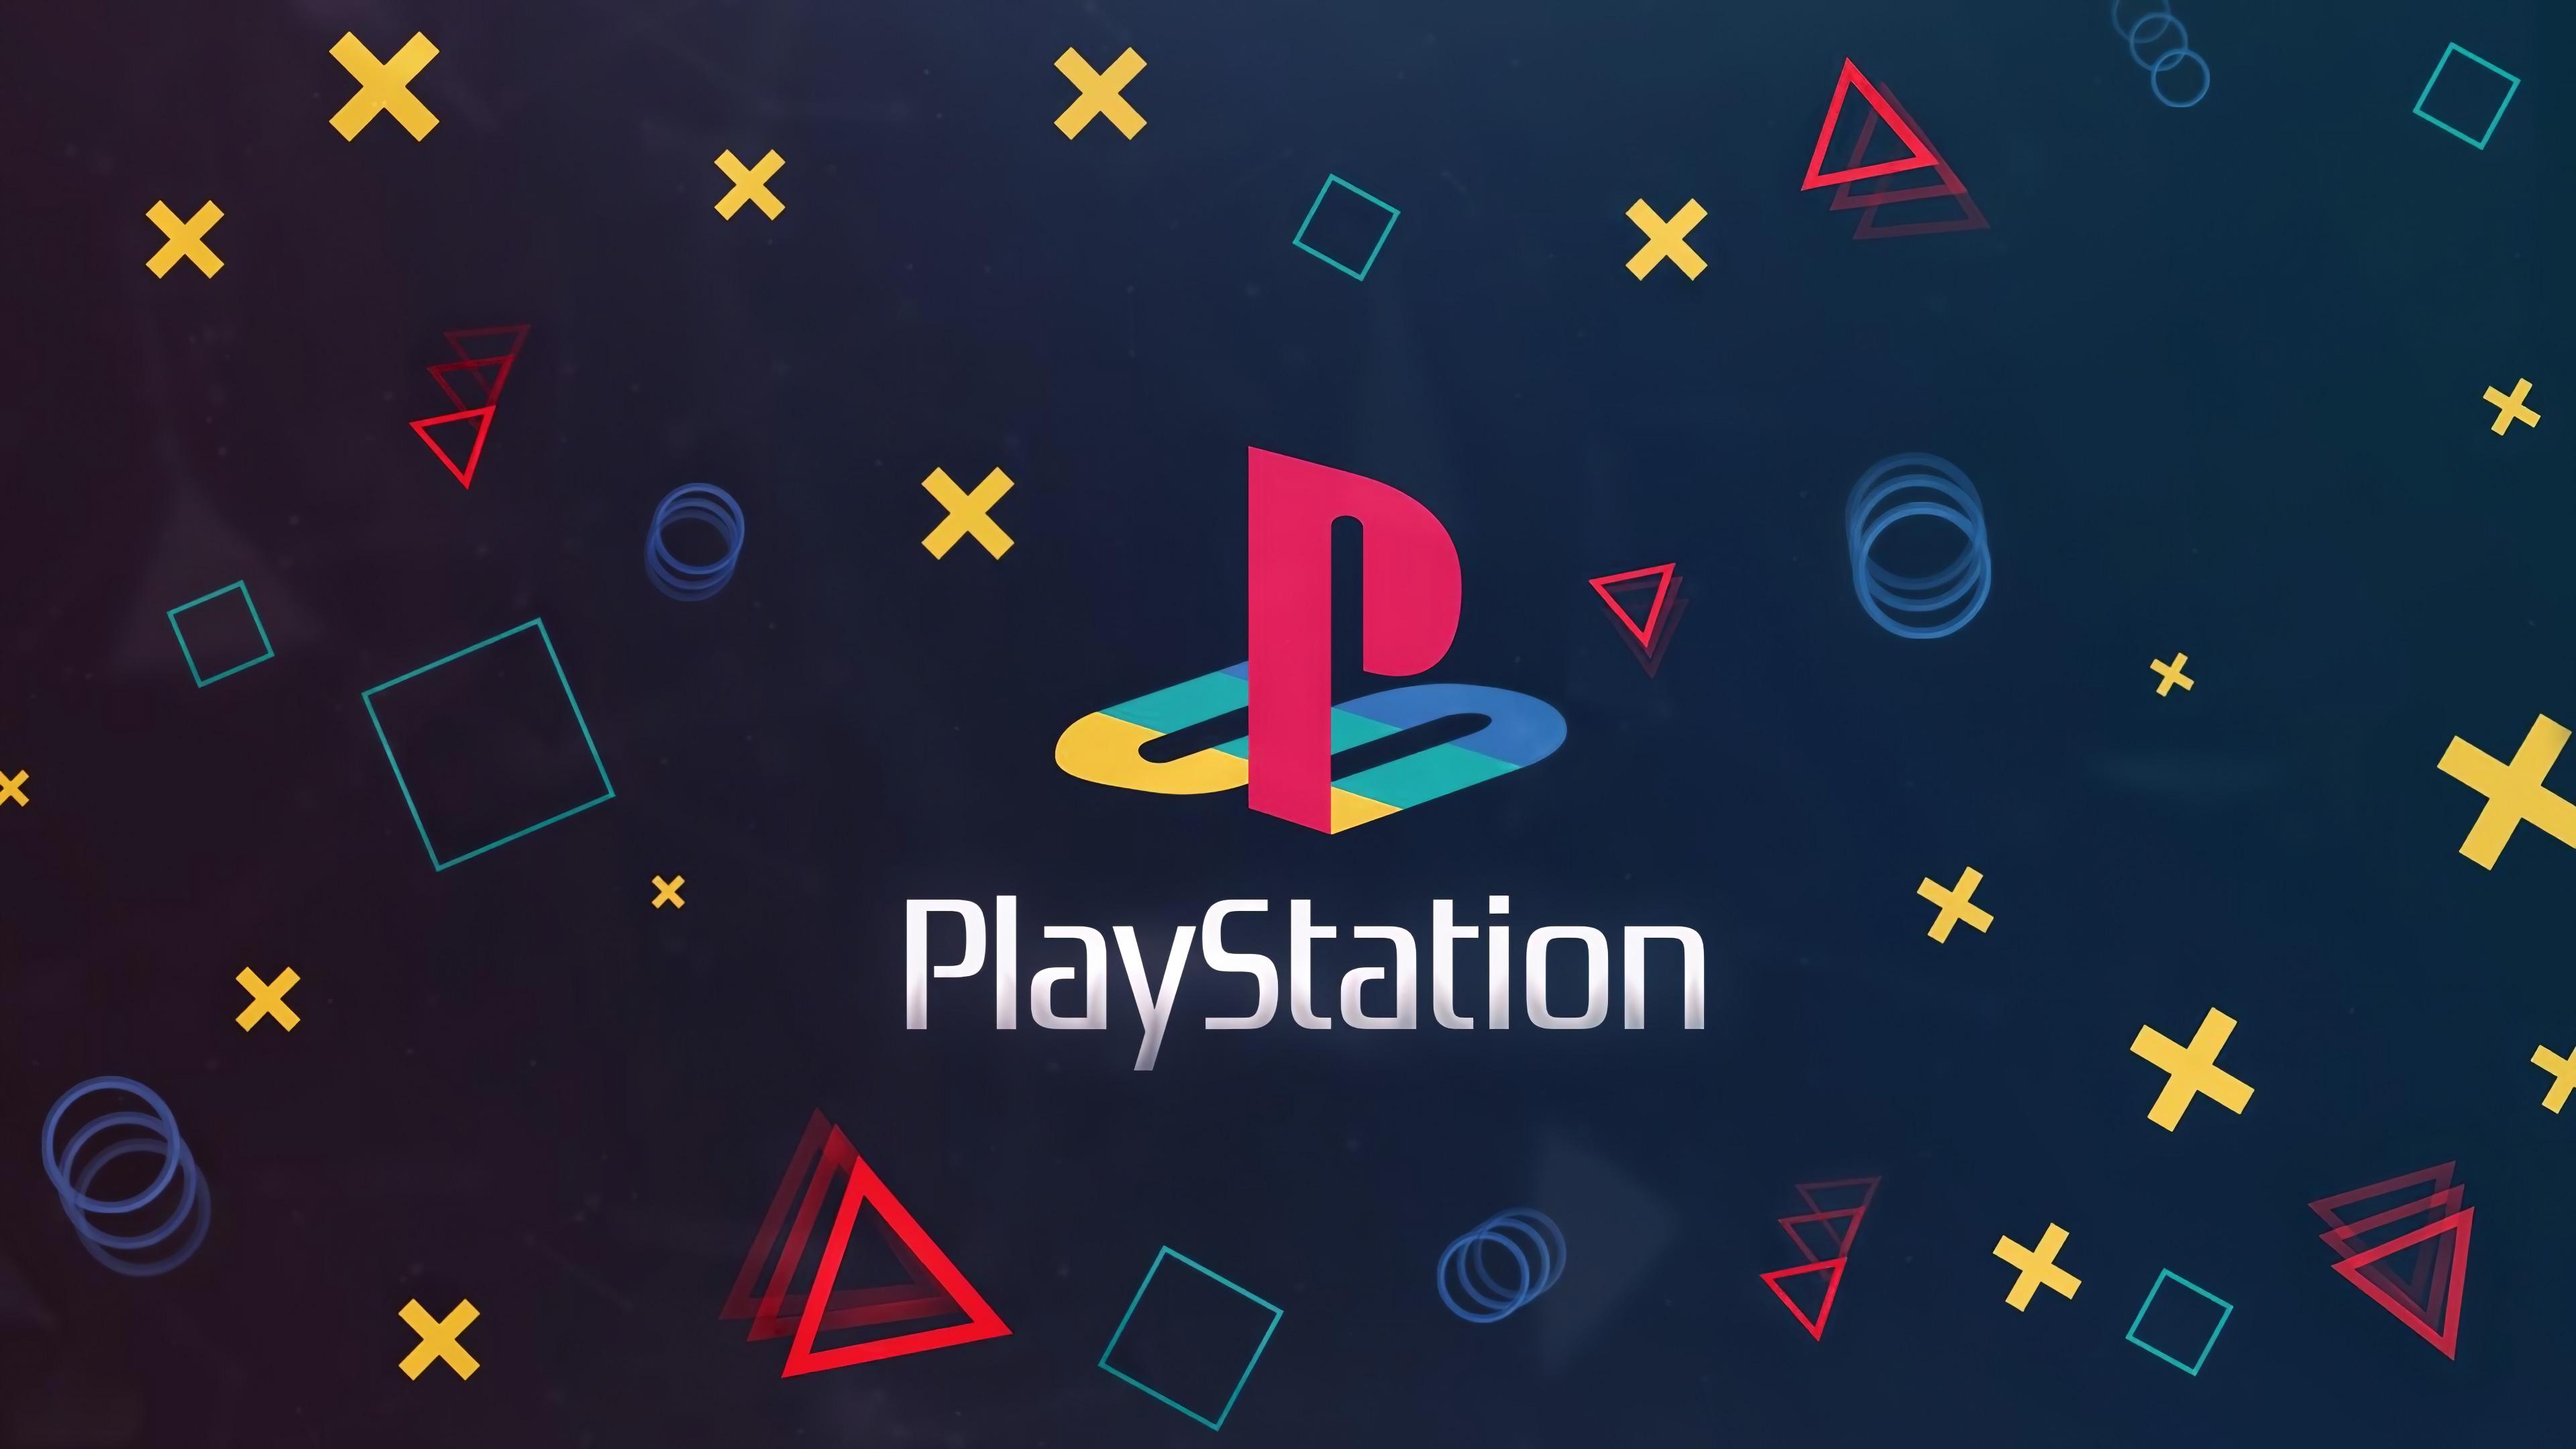 PlayStation-logotyp på mörk bakgrund med olika kontrollerknappar.